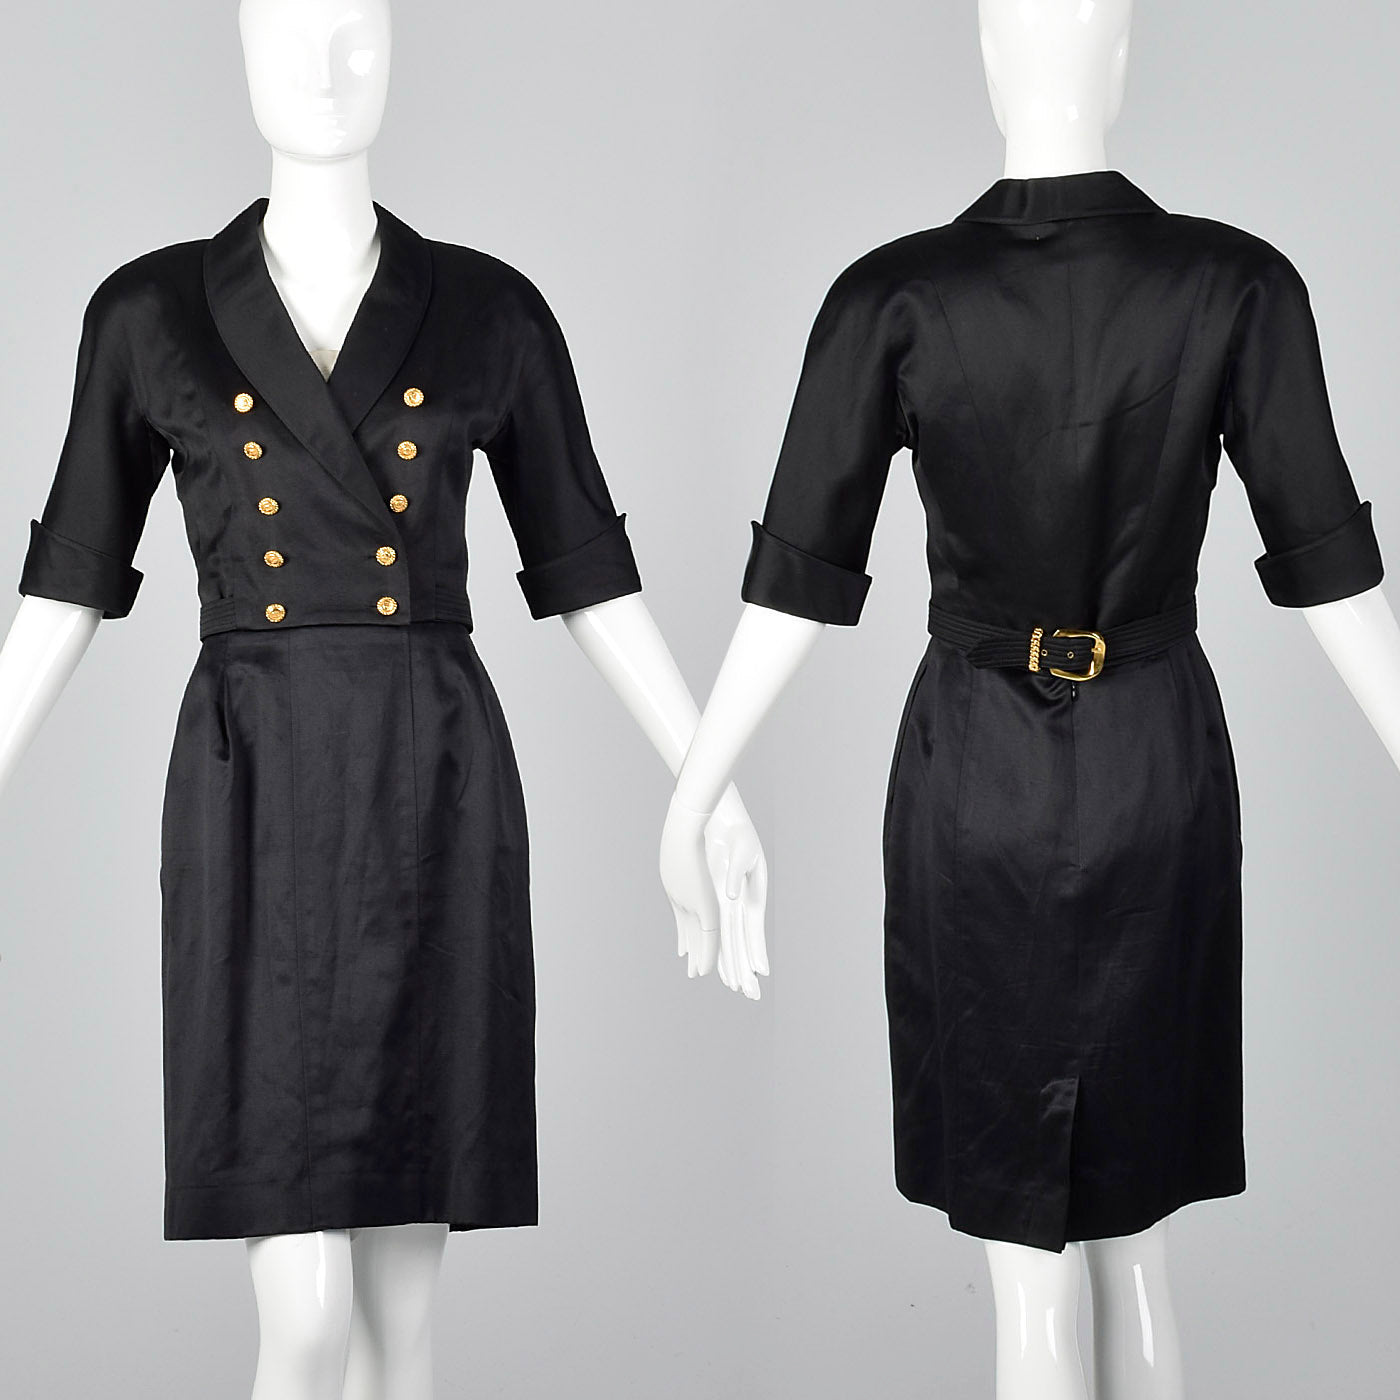 HelensChanel 98A 1998 Fall Nwot Vintage Chanel Black Skirt Suit FR 38